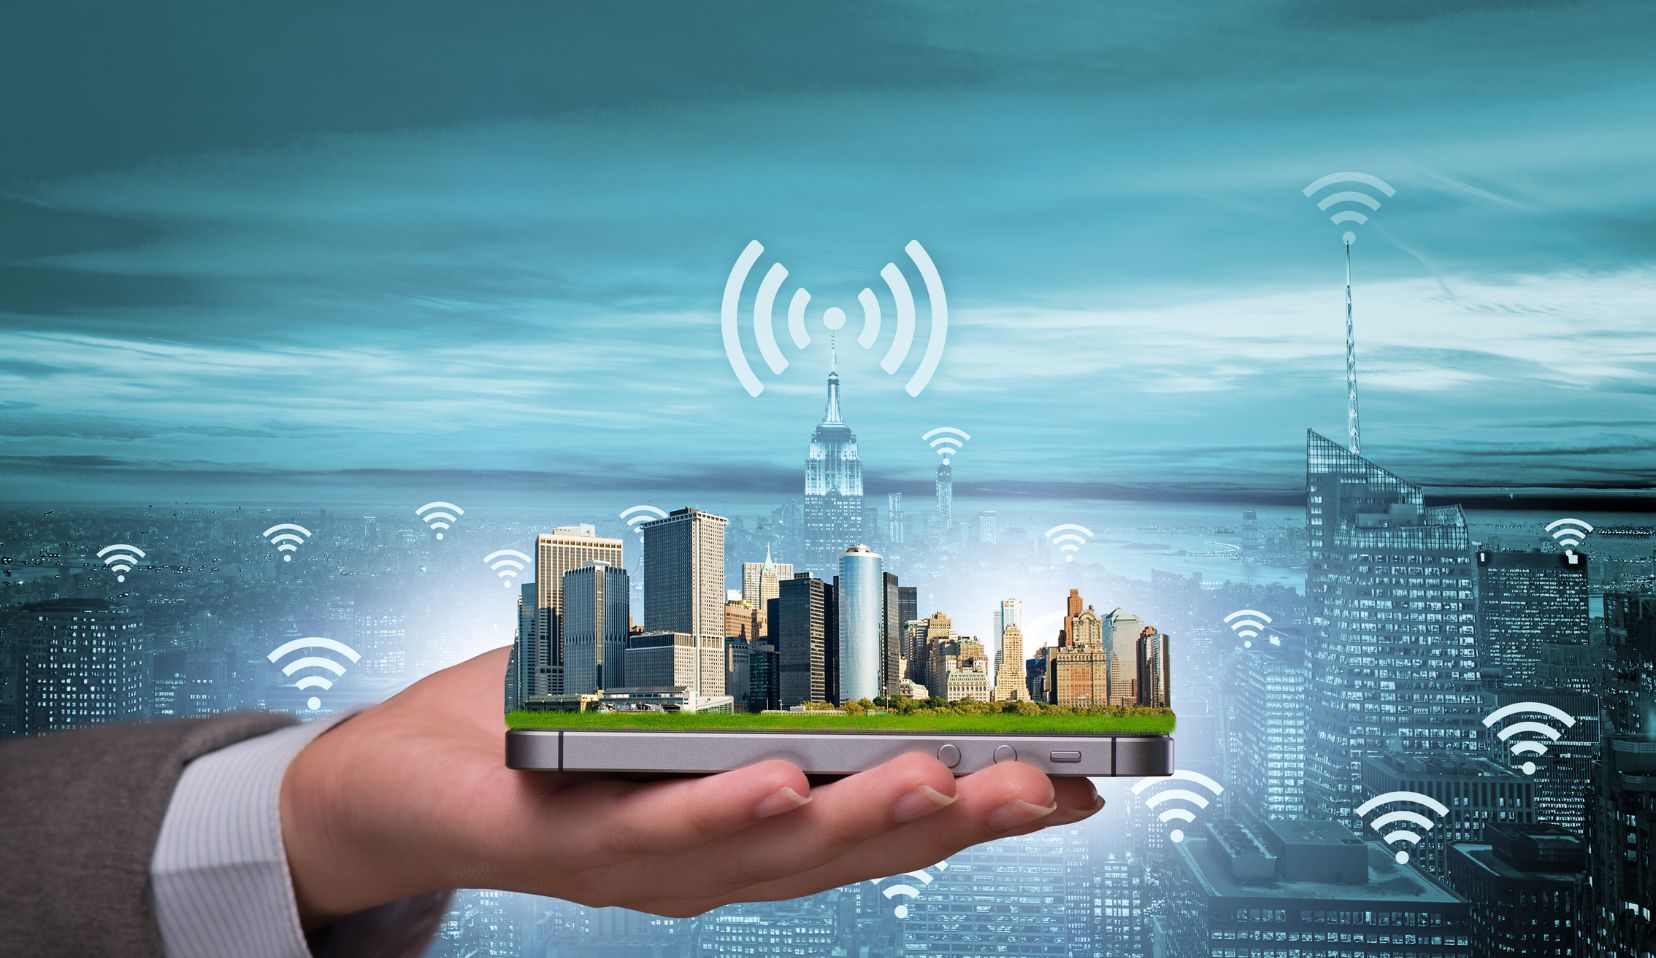 How is IoT enabling smart buildings